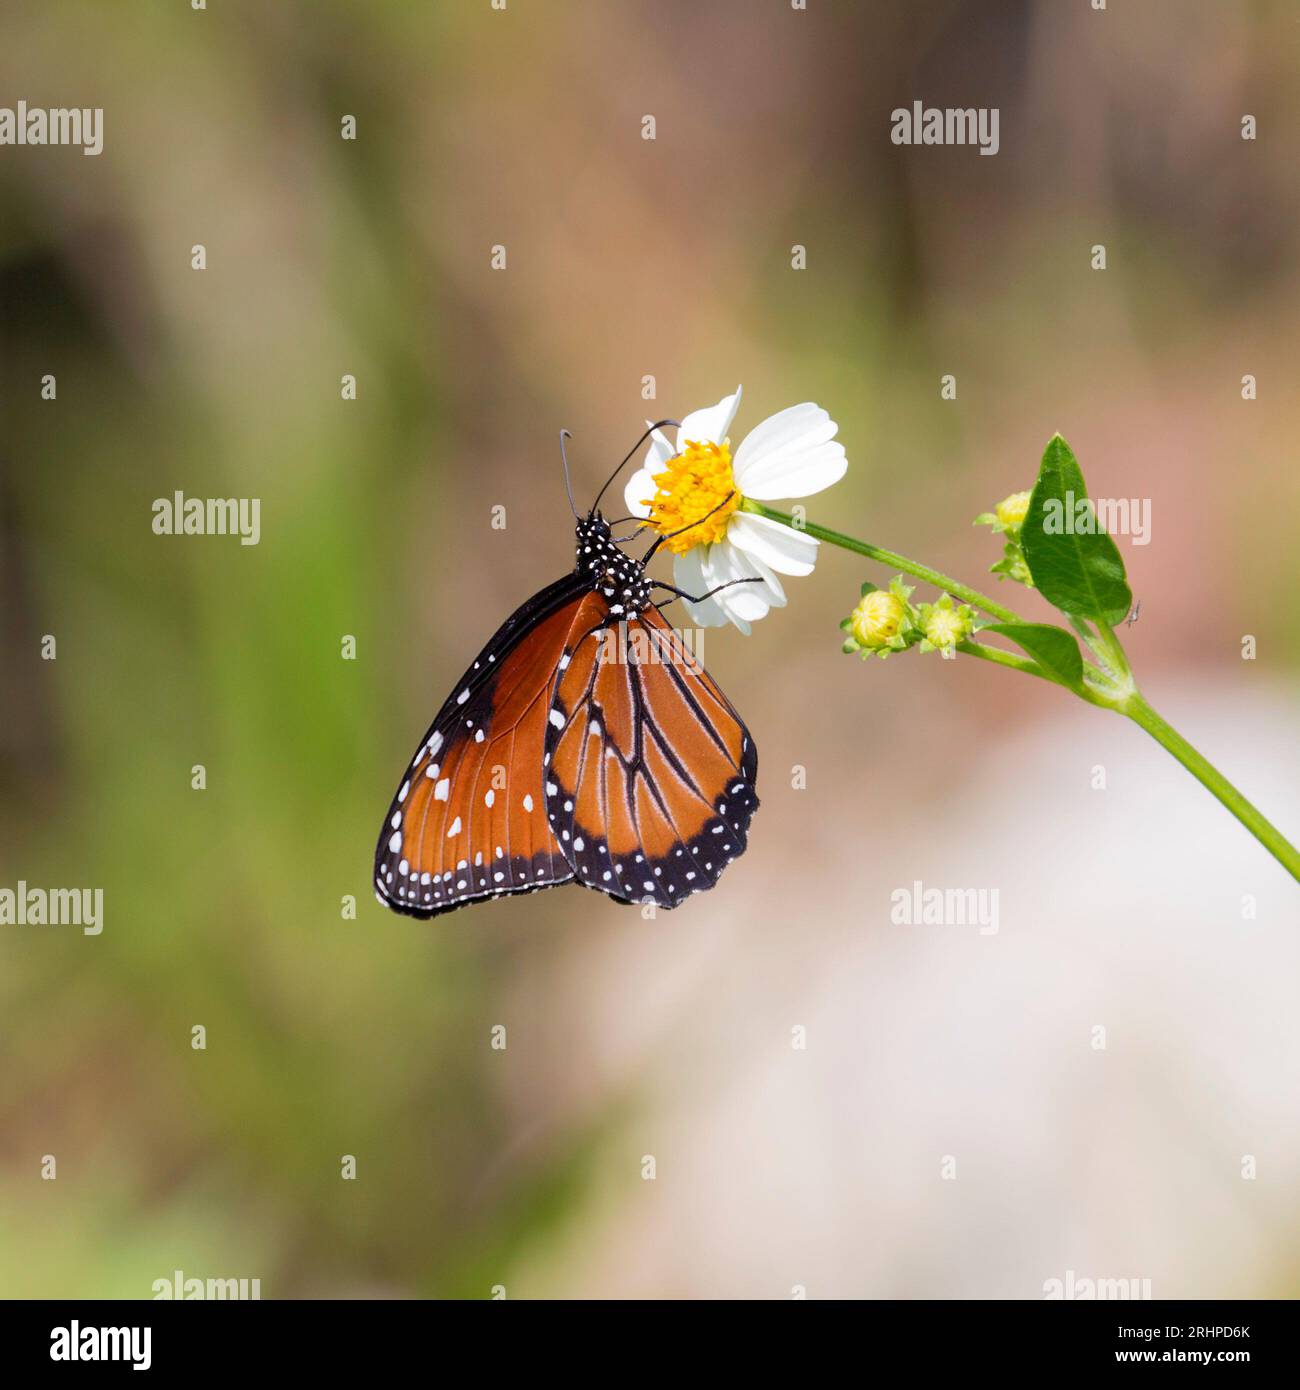 Parc national des Everglades, Floride, États-Unis. Reine papillon, Danaus gilippus, se nourrissant de nectar de Bidens alba, Shark Valley. Banque D'Images